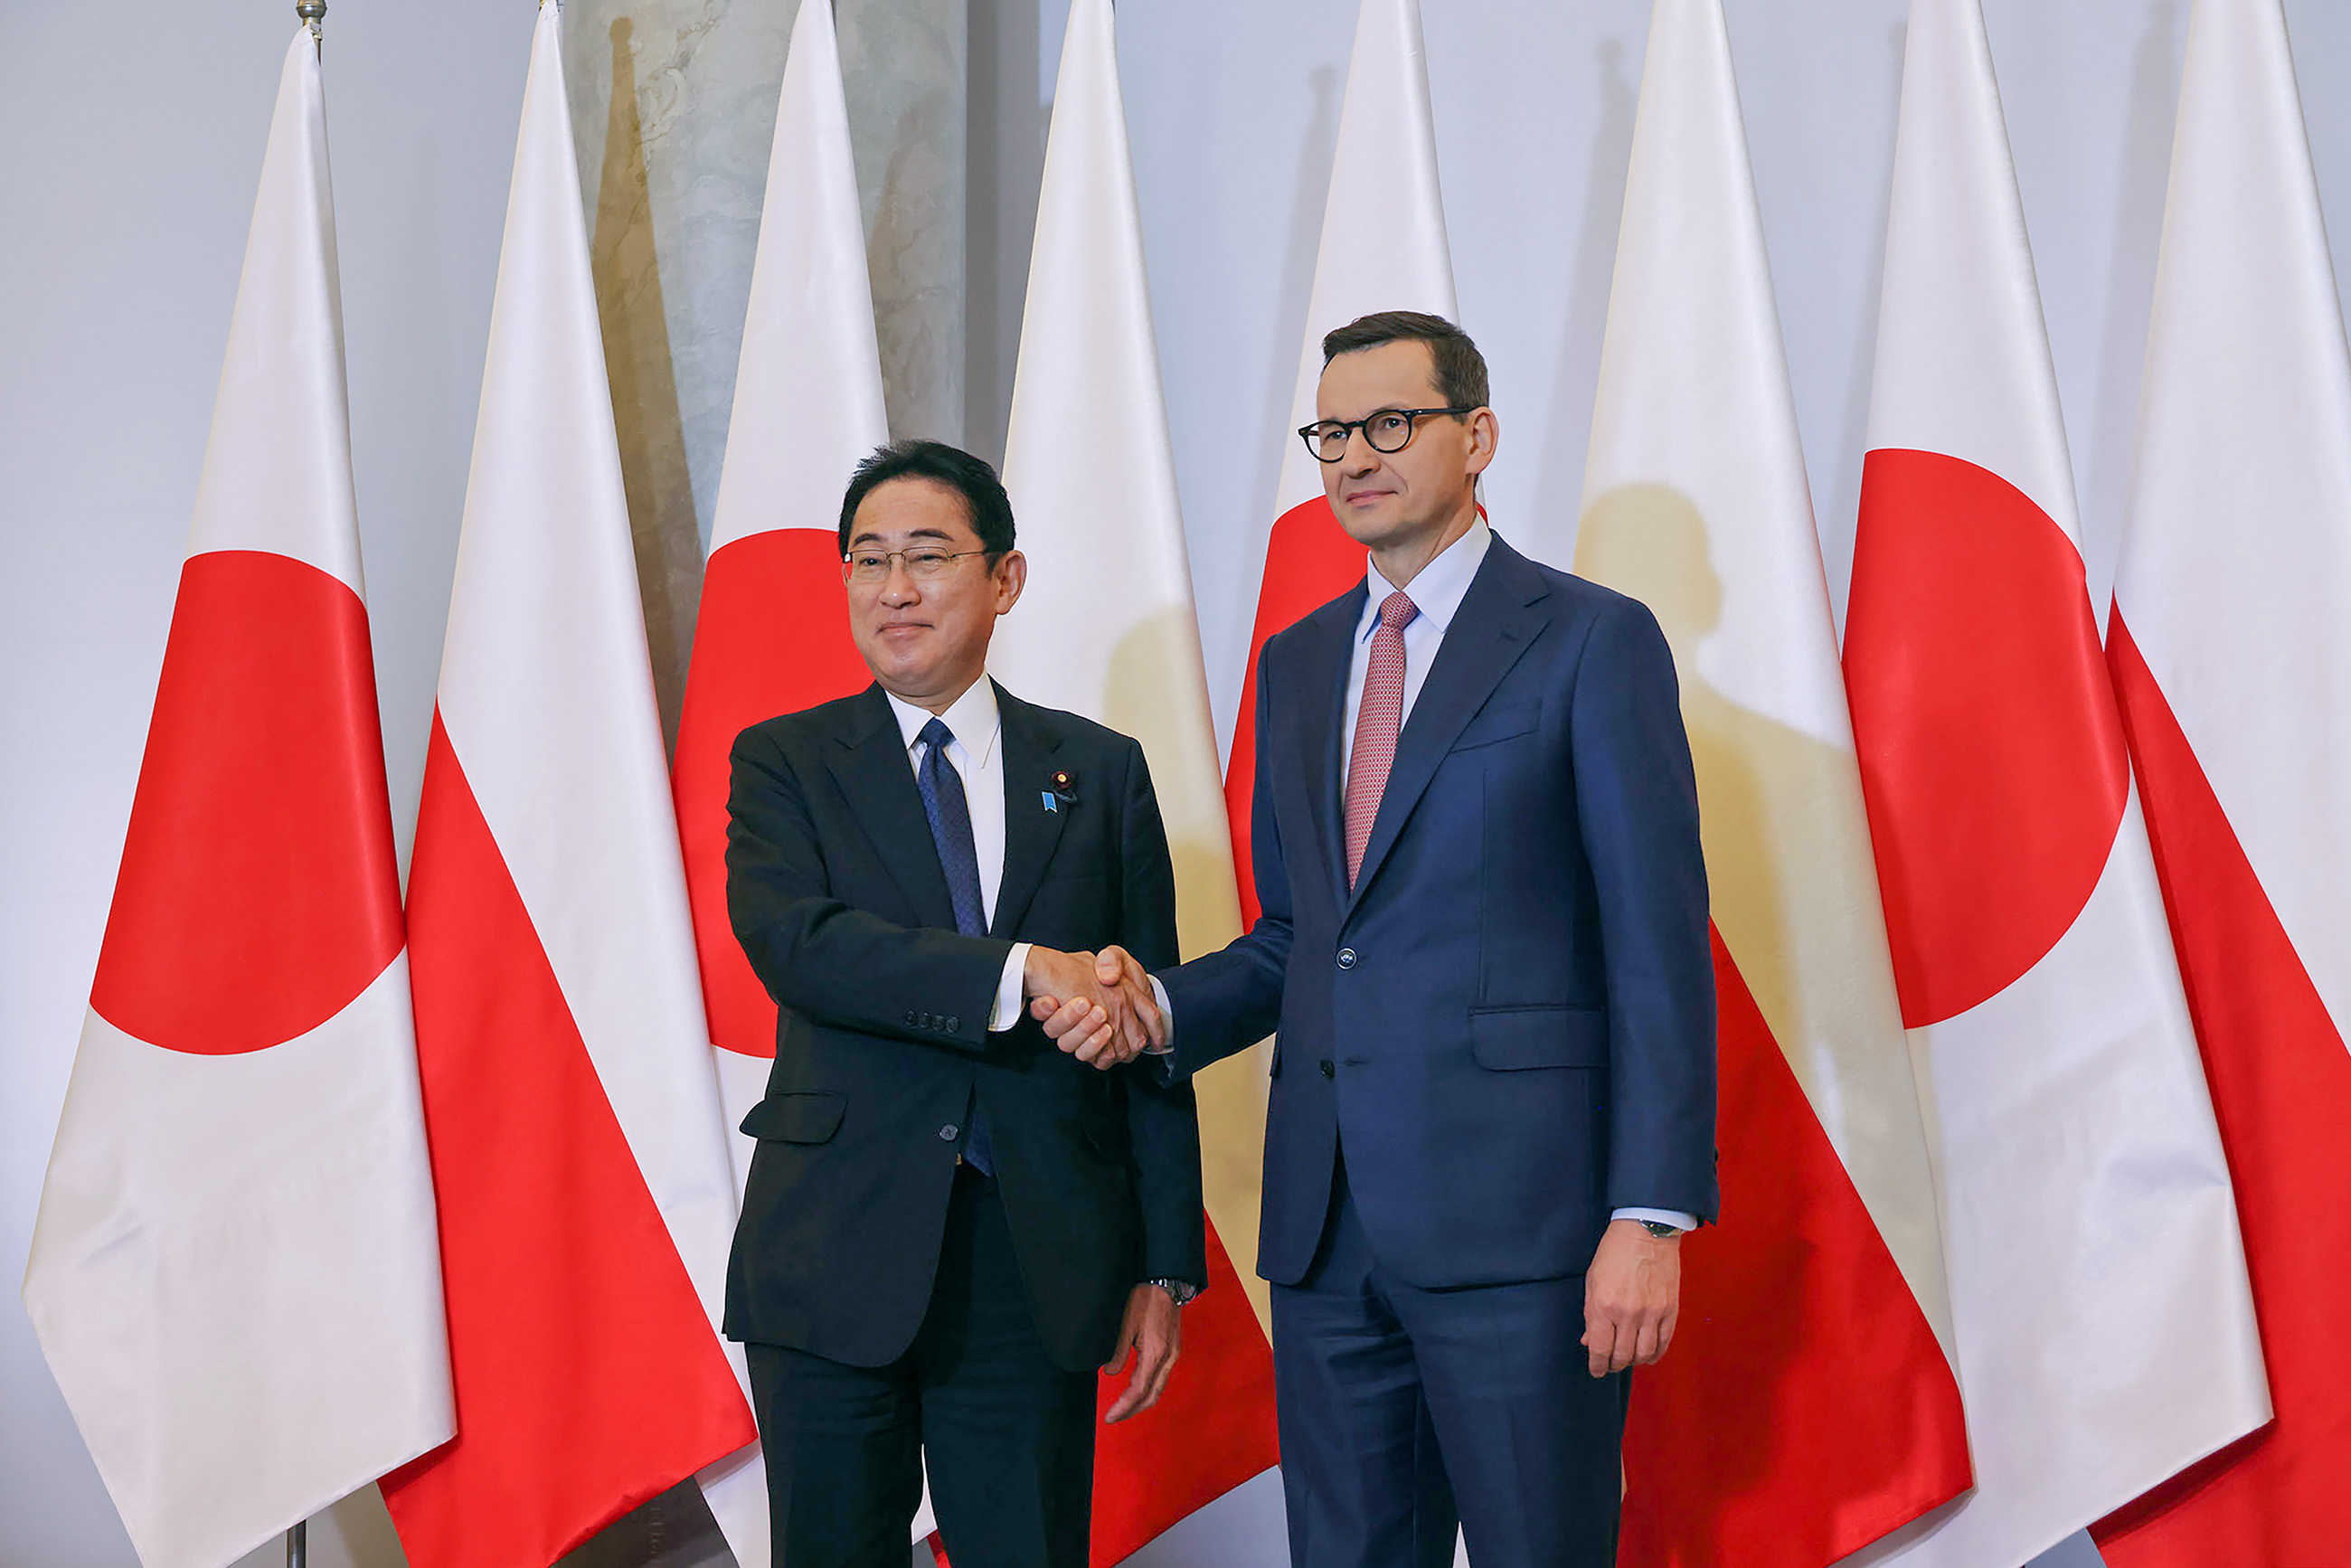 モラヴィエツキ首相と会談する岸田総理